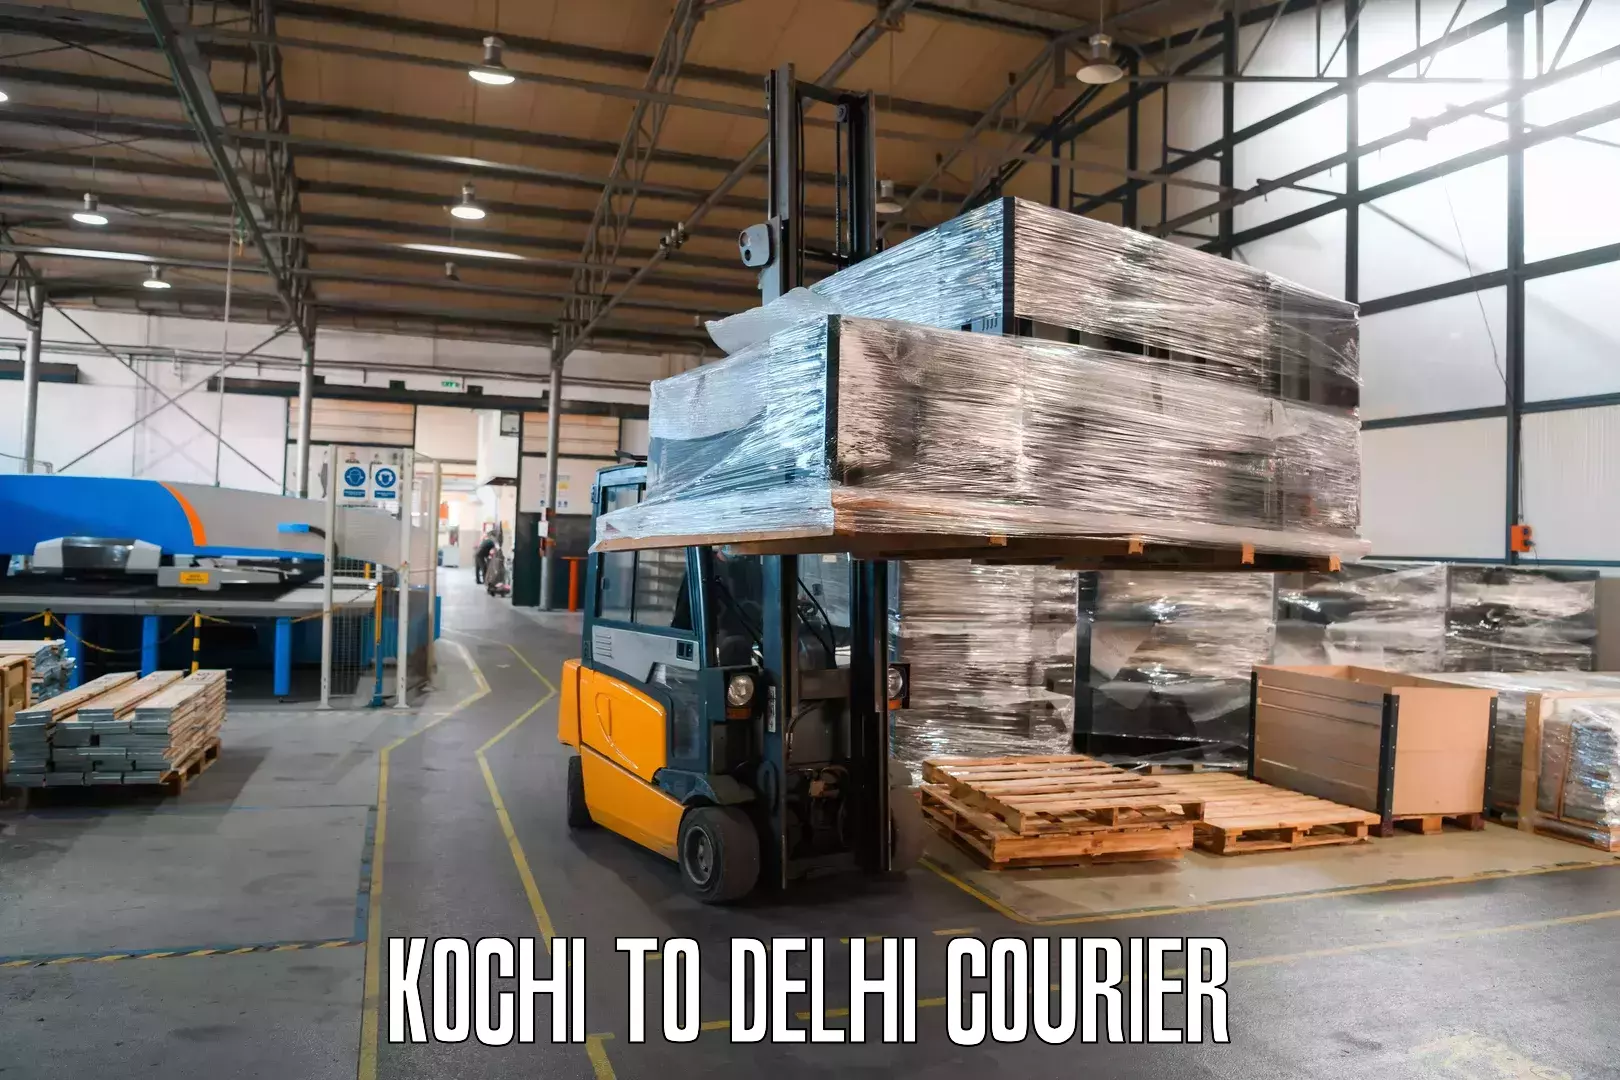 Small parcel delivery Kochi to Delhi